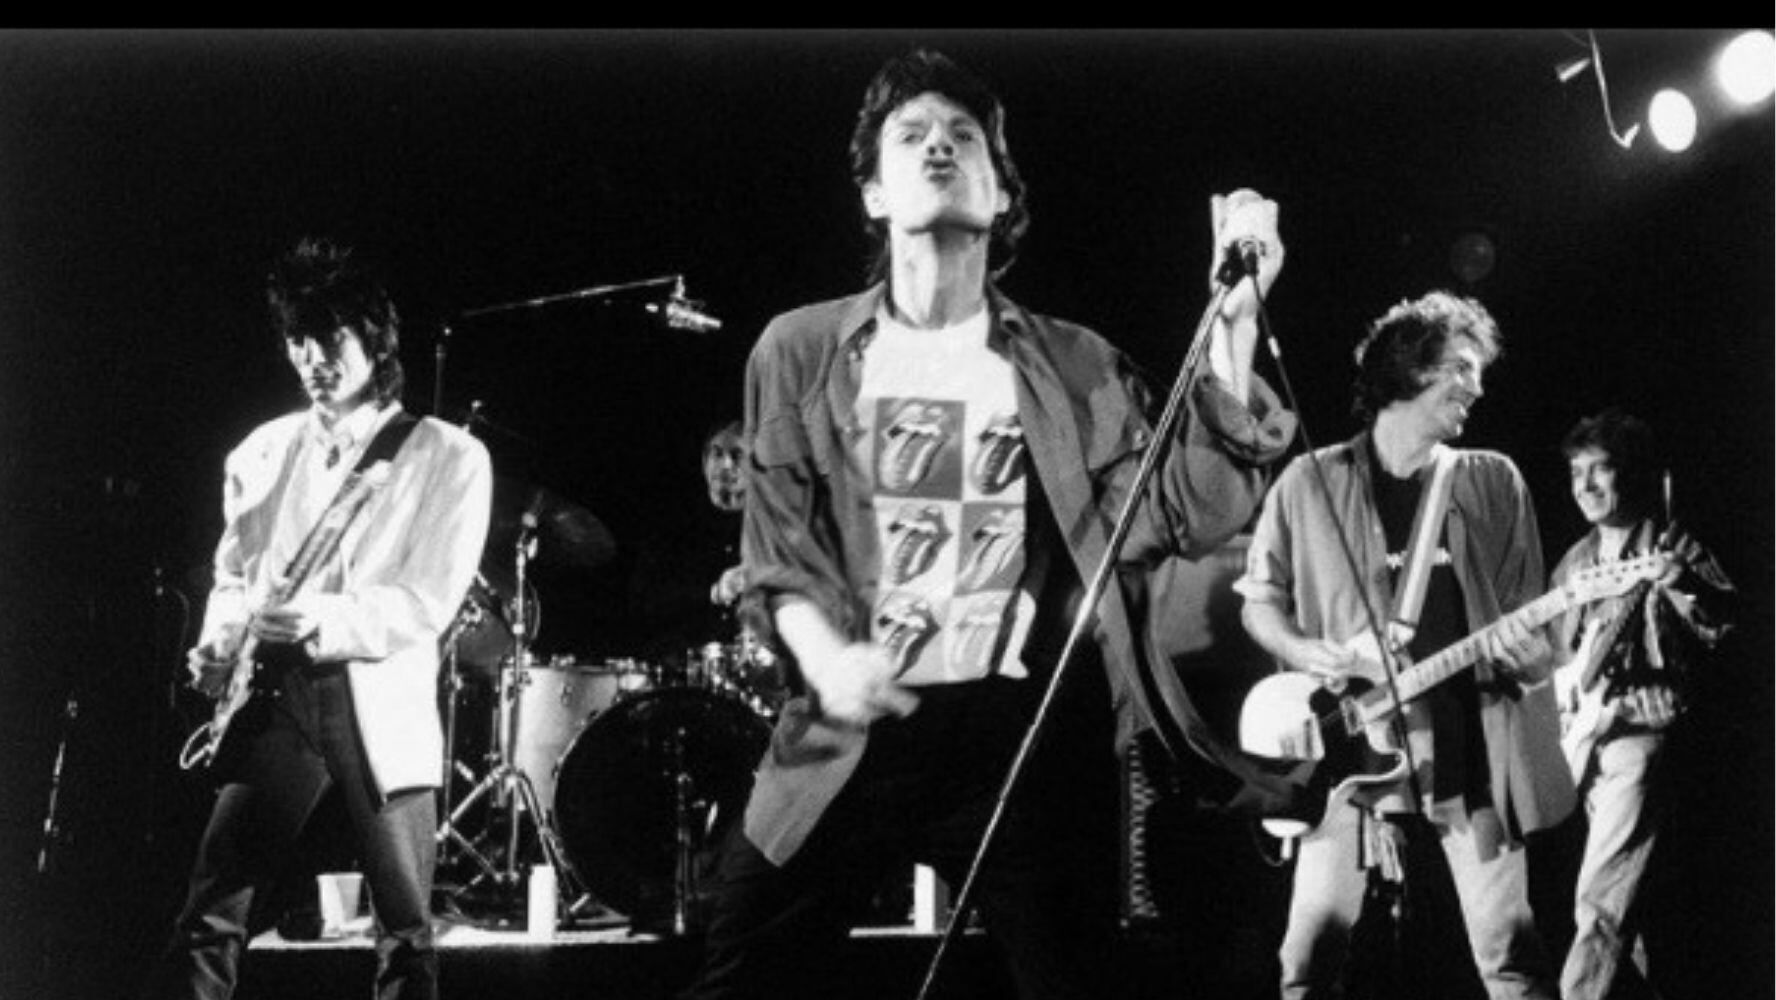 Los Rolling Stones lanzan álbum en vivo ‘Live at El Mocambo’, grabado en 1977